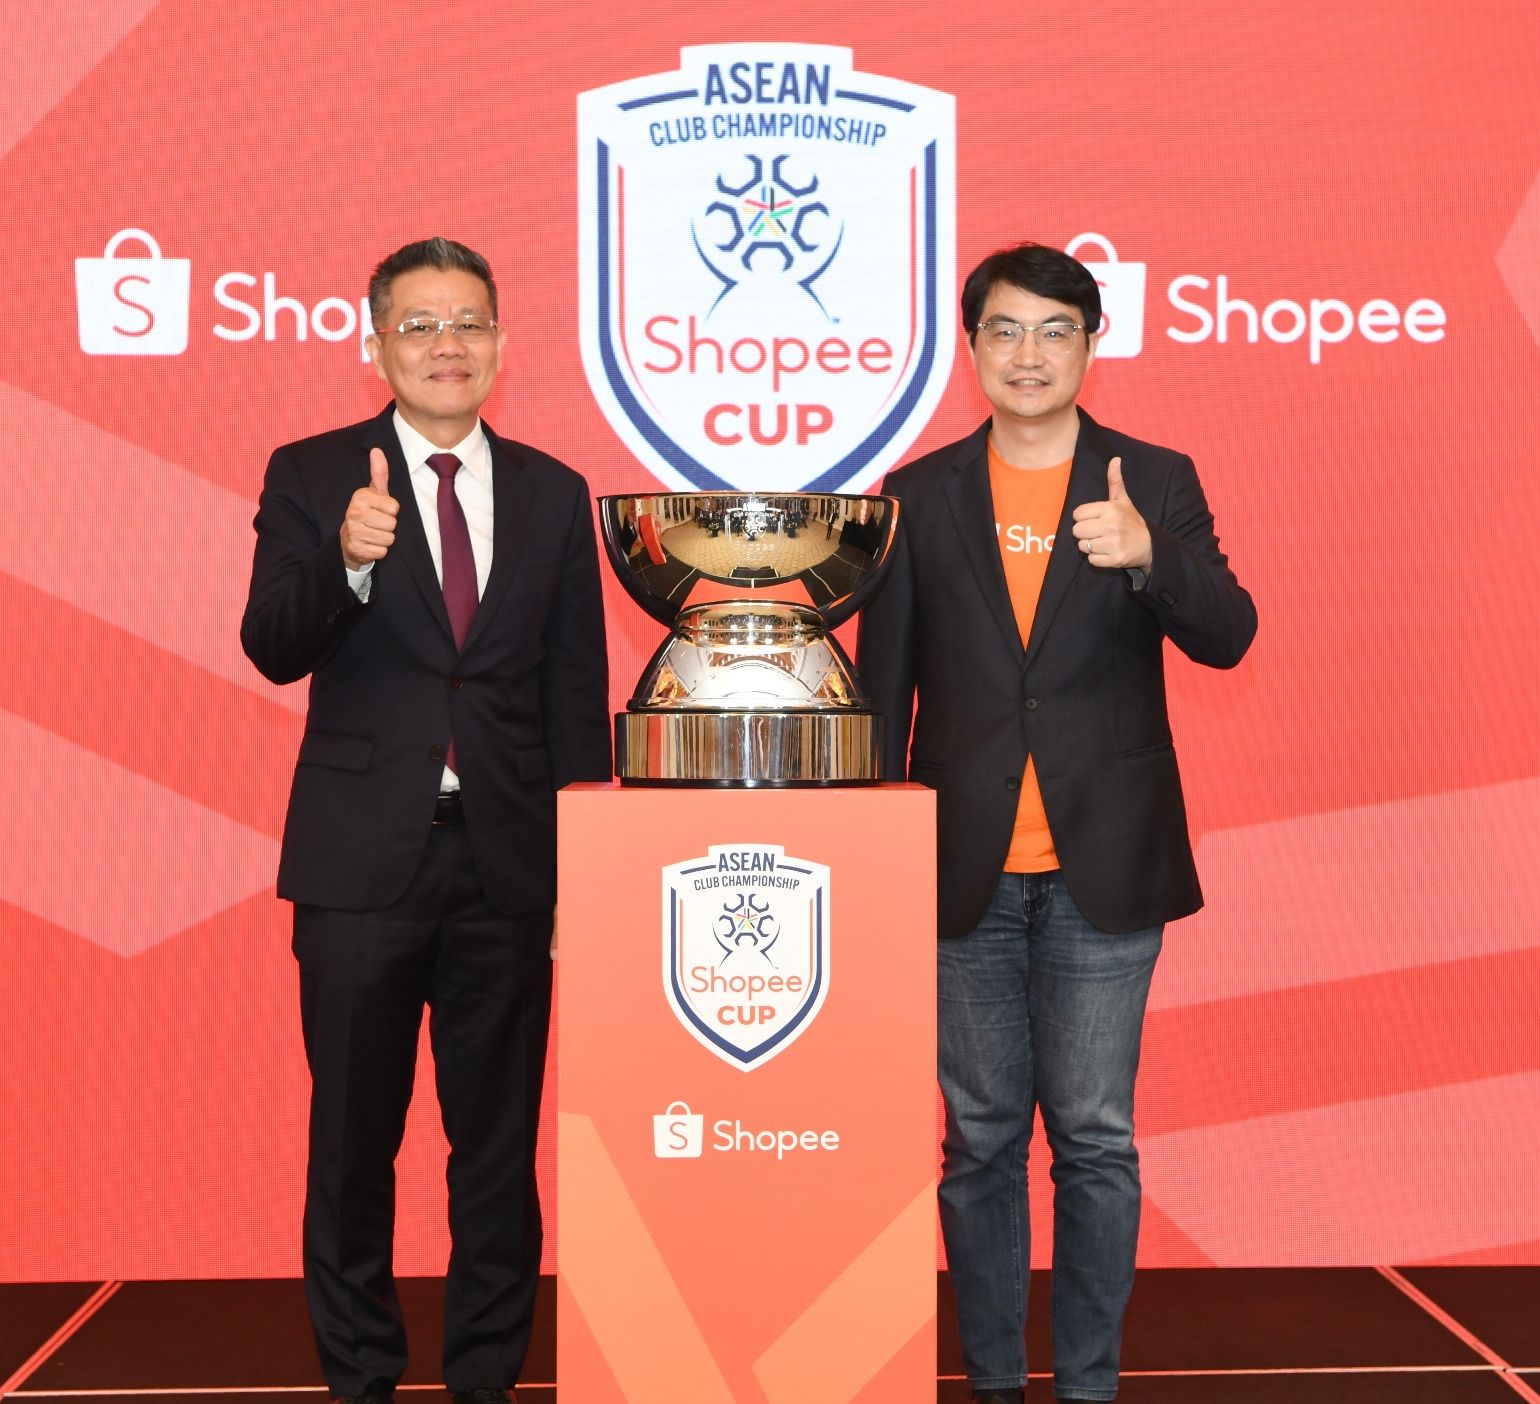 Shopee sebagai mitra resmi, ASEAN Club Championship, yang diberi nama Shopee Cup.